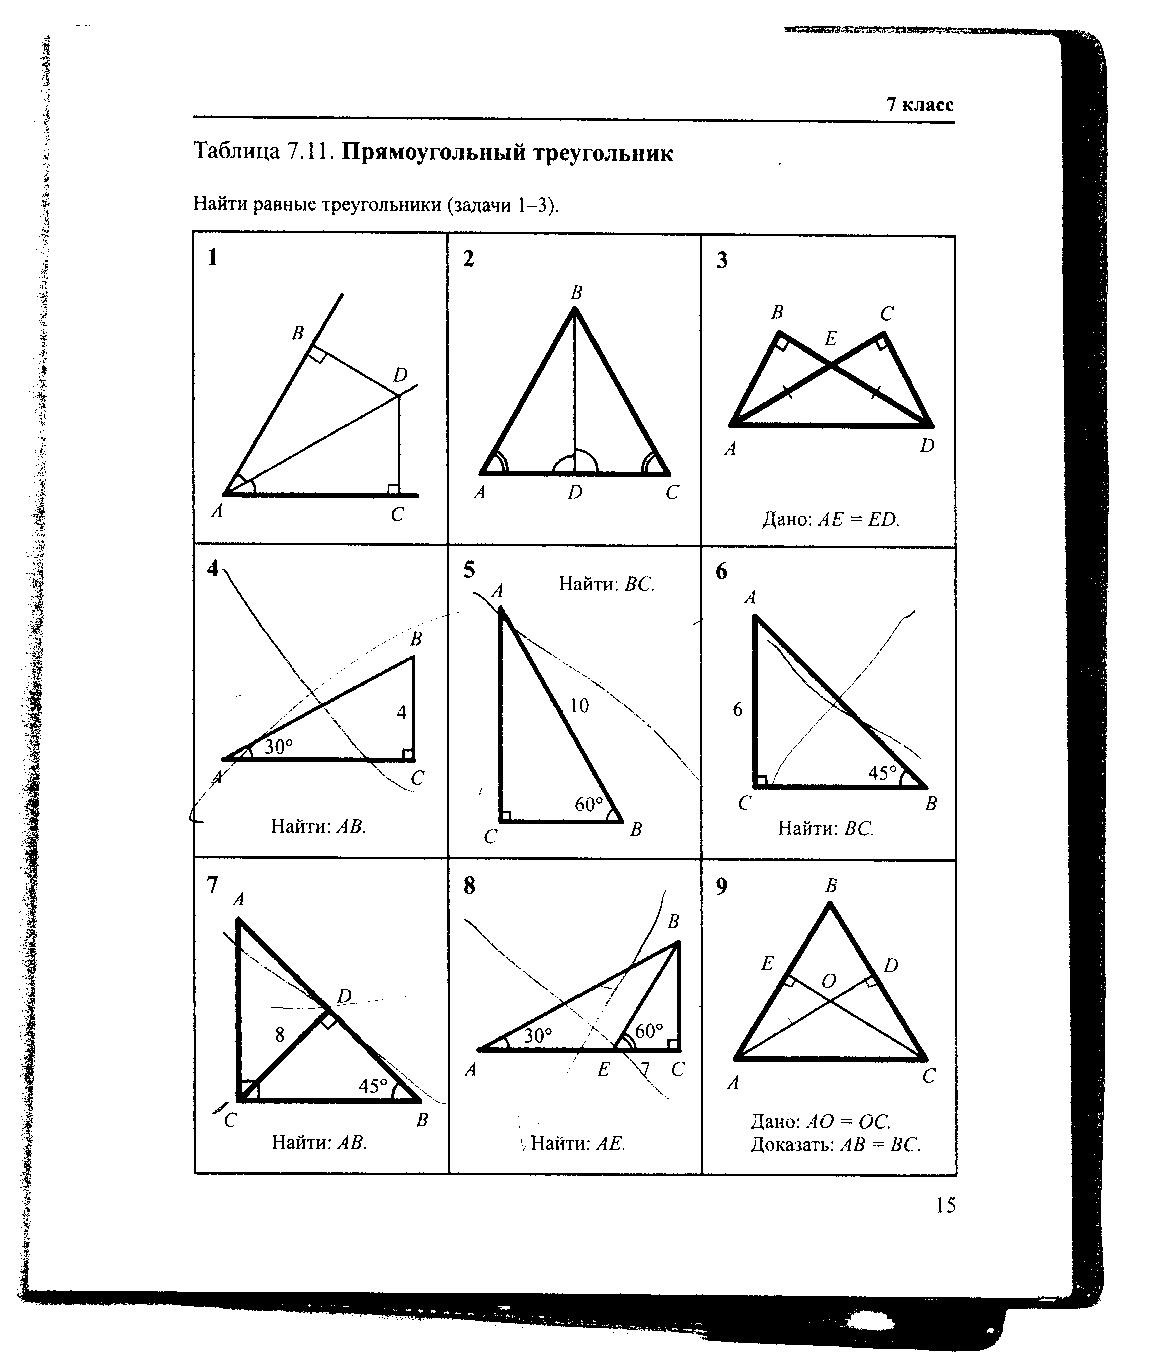 Задачи на чертежах 7 9. Геометрия Рабинович 7-9 класс задачи на готовых чертежах. Гдз по геометрии Рабинович 7-9 класс задачи на готовых чертежах. Гдз Рабинович 7-9 класс геометрия ответы. Таблица 7.11 прямоугольный треугольник 7 класс.